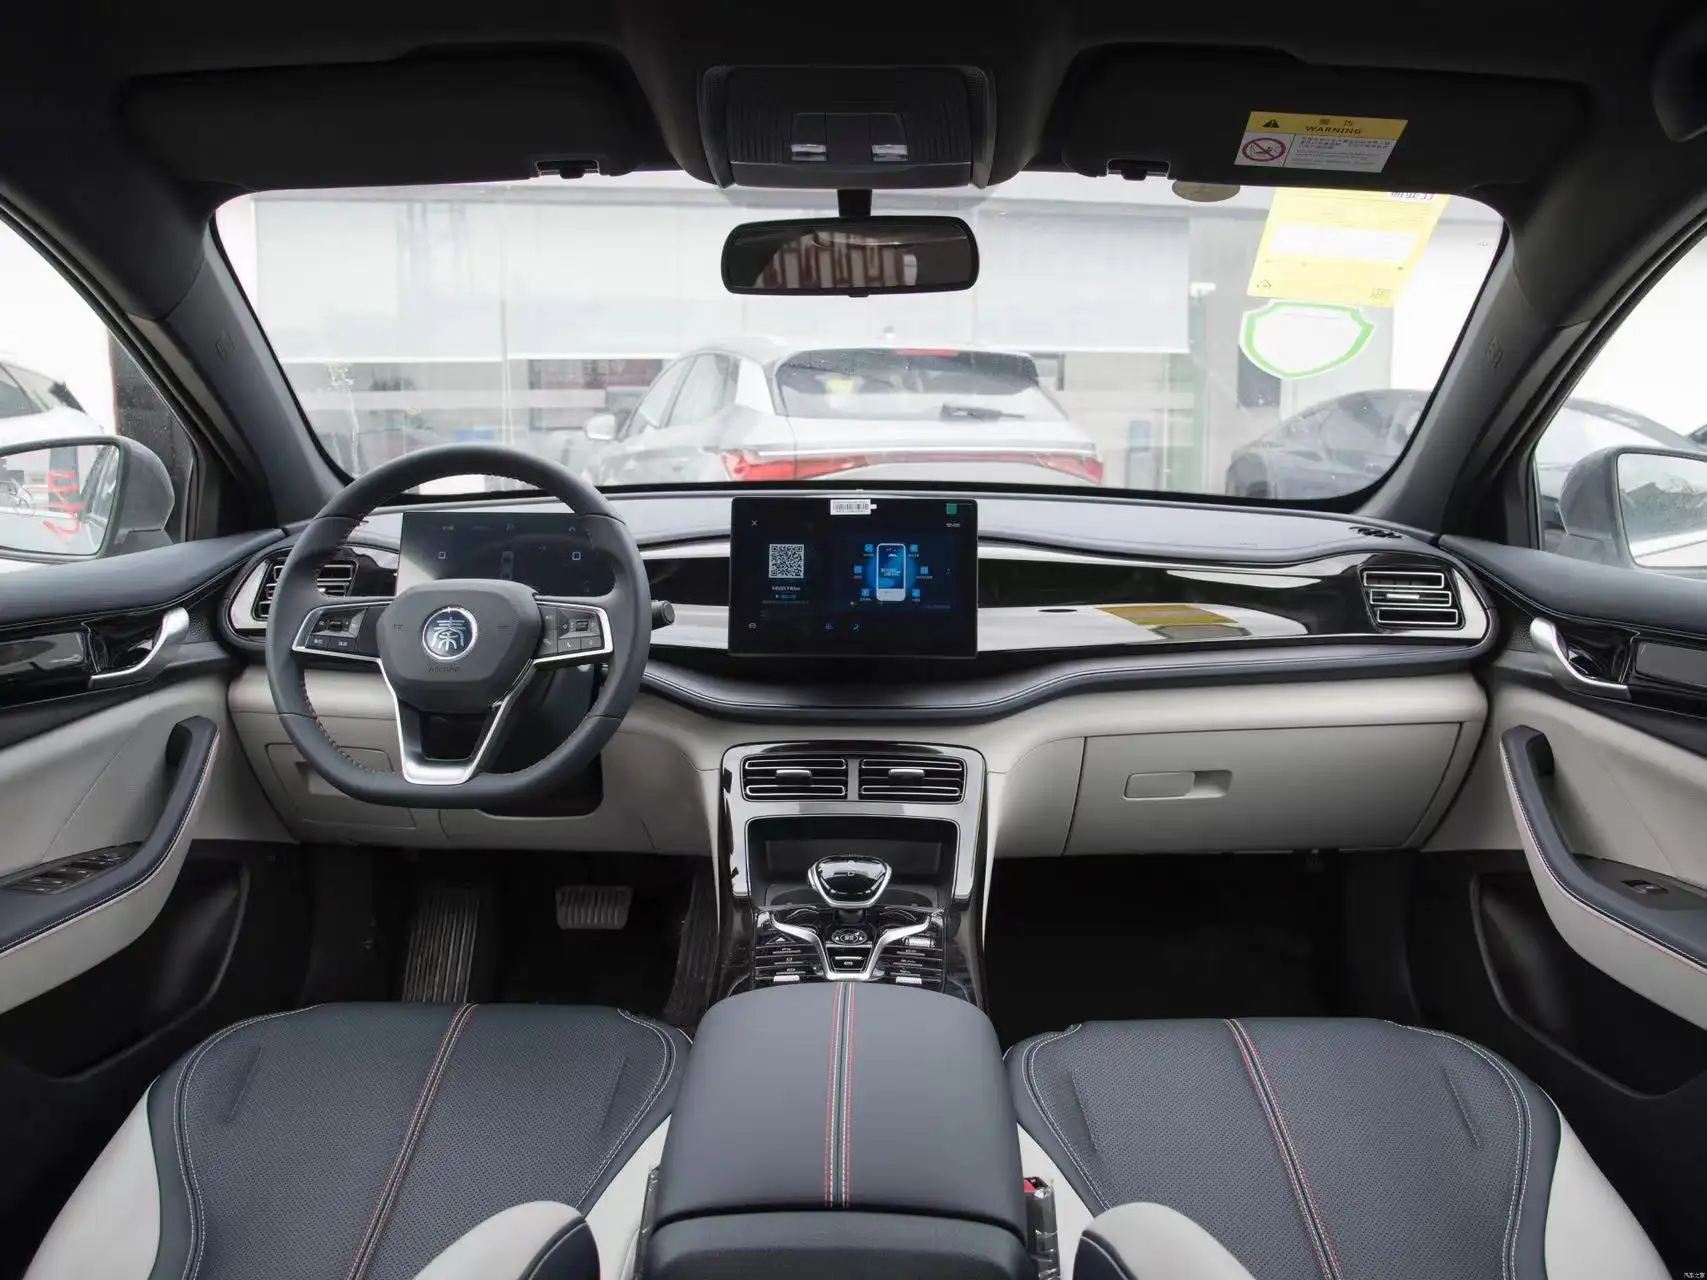 2023 Byd ev modeli Qin artı lüks elektrikli otomobil yeni yüksek performans 4 kapılar 5 koltuklar, diğer modeller Tang şarkı Yuan